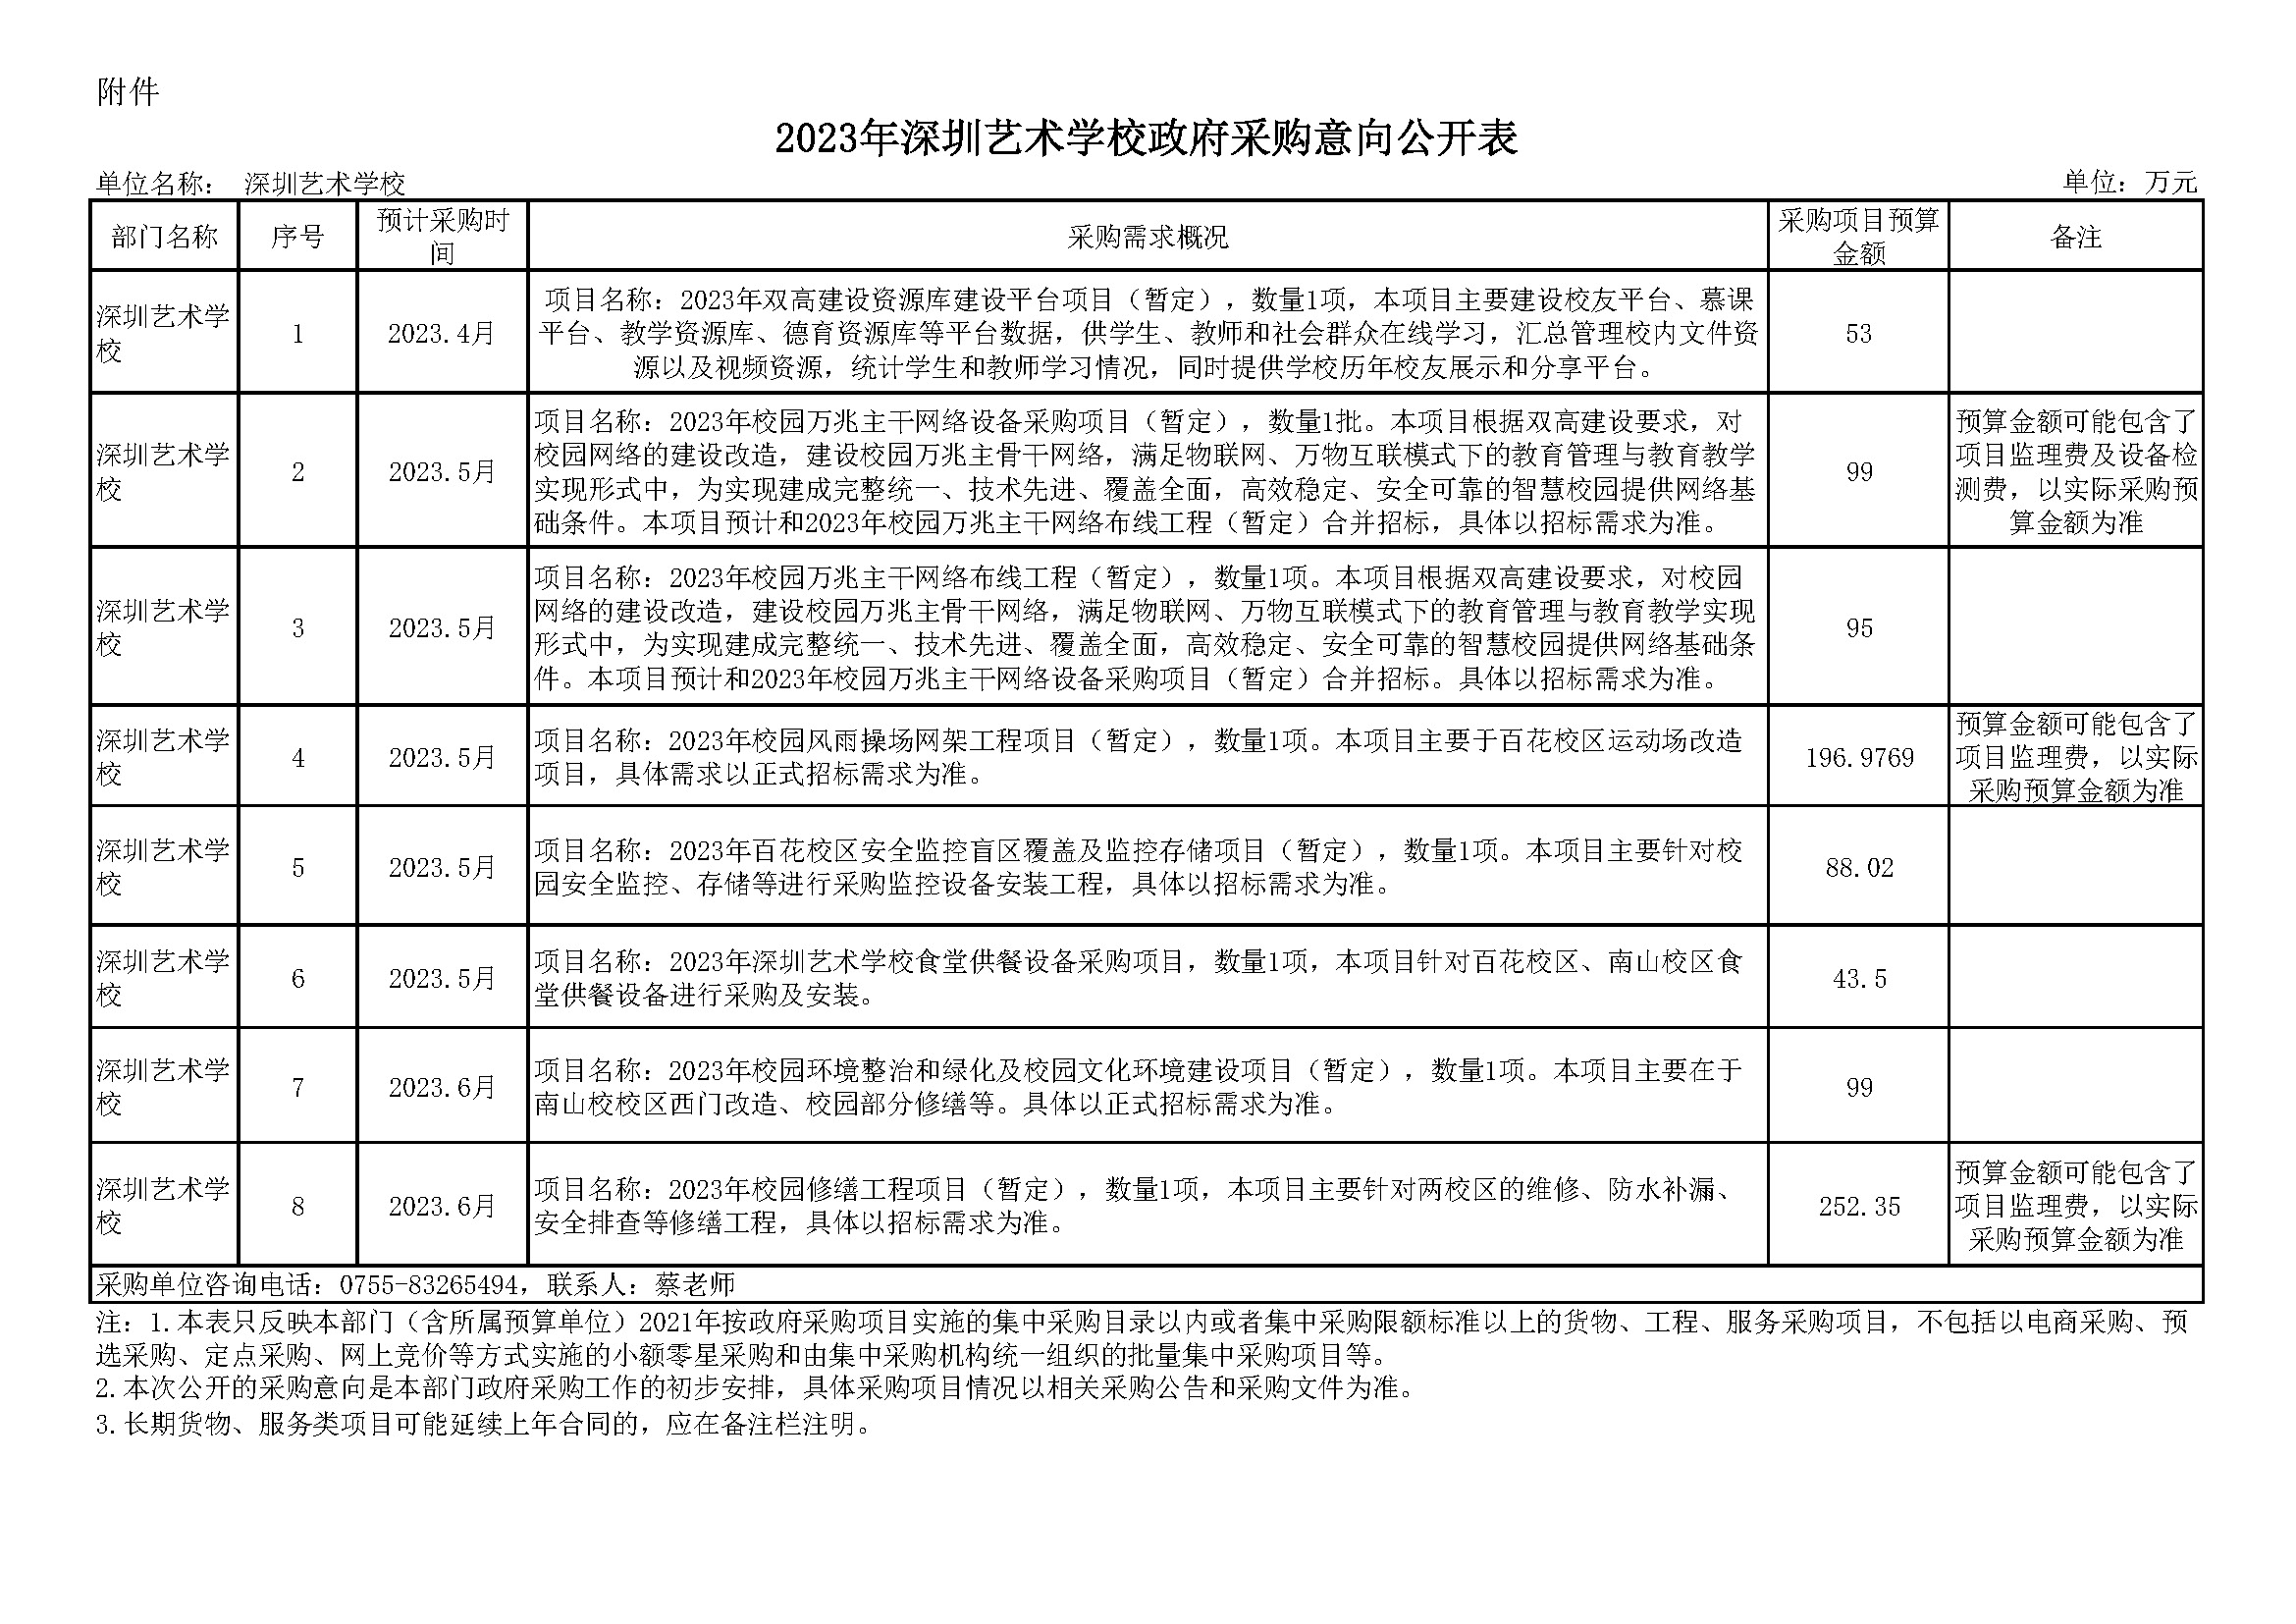 3-2023年度深圳艺术学校政府采购意向公开表 （4.12）.jpg